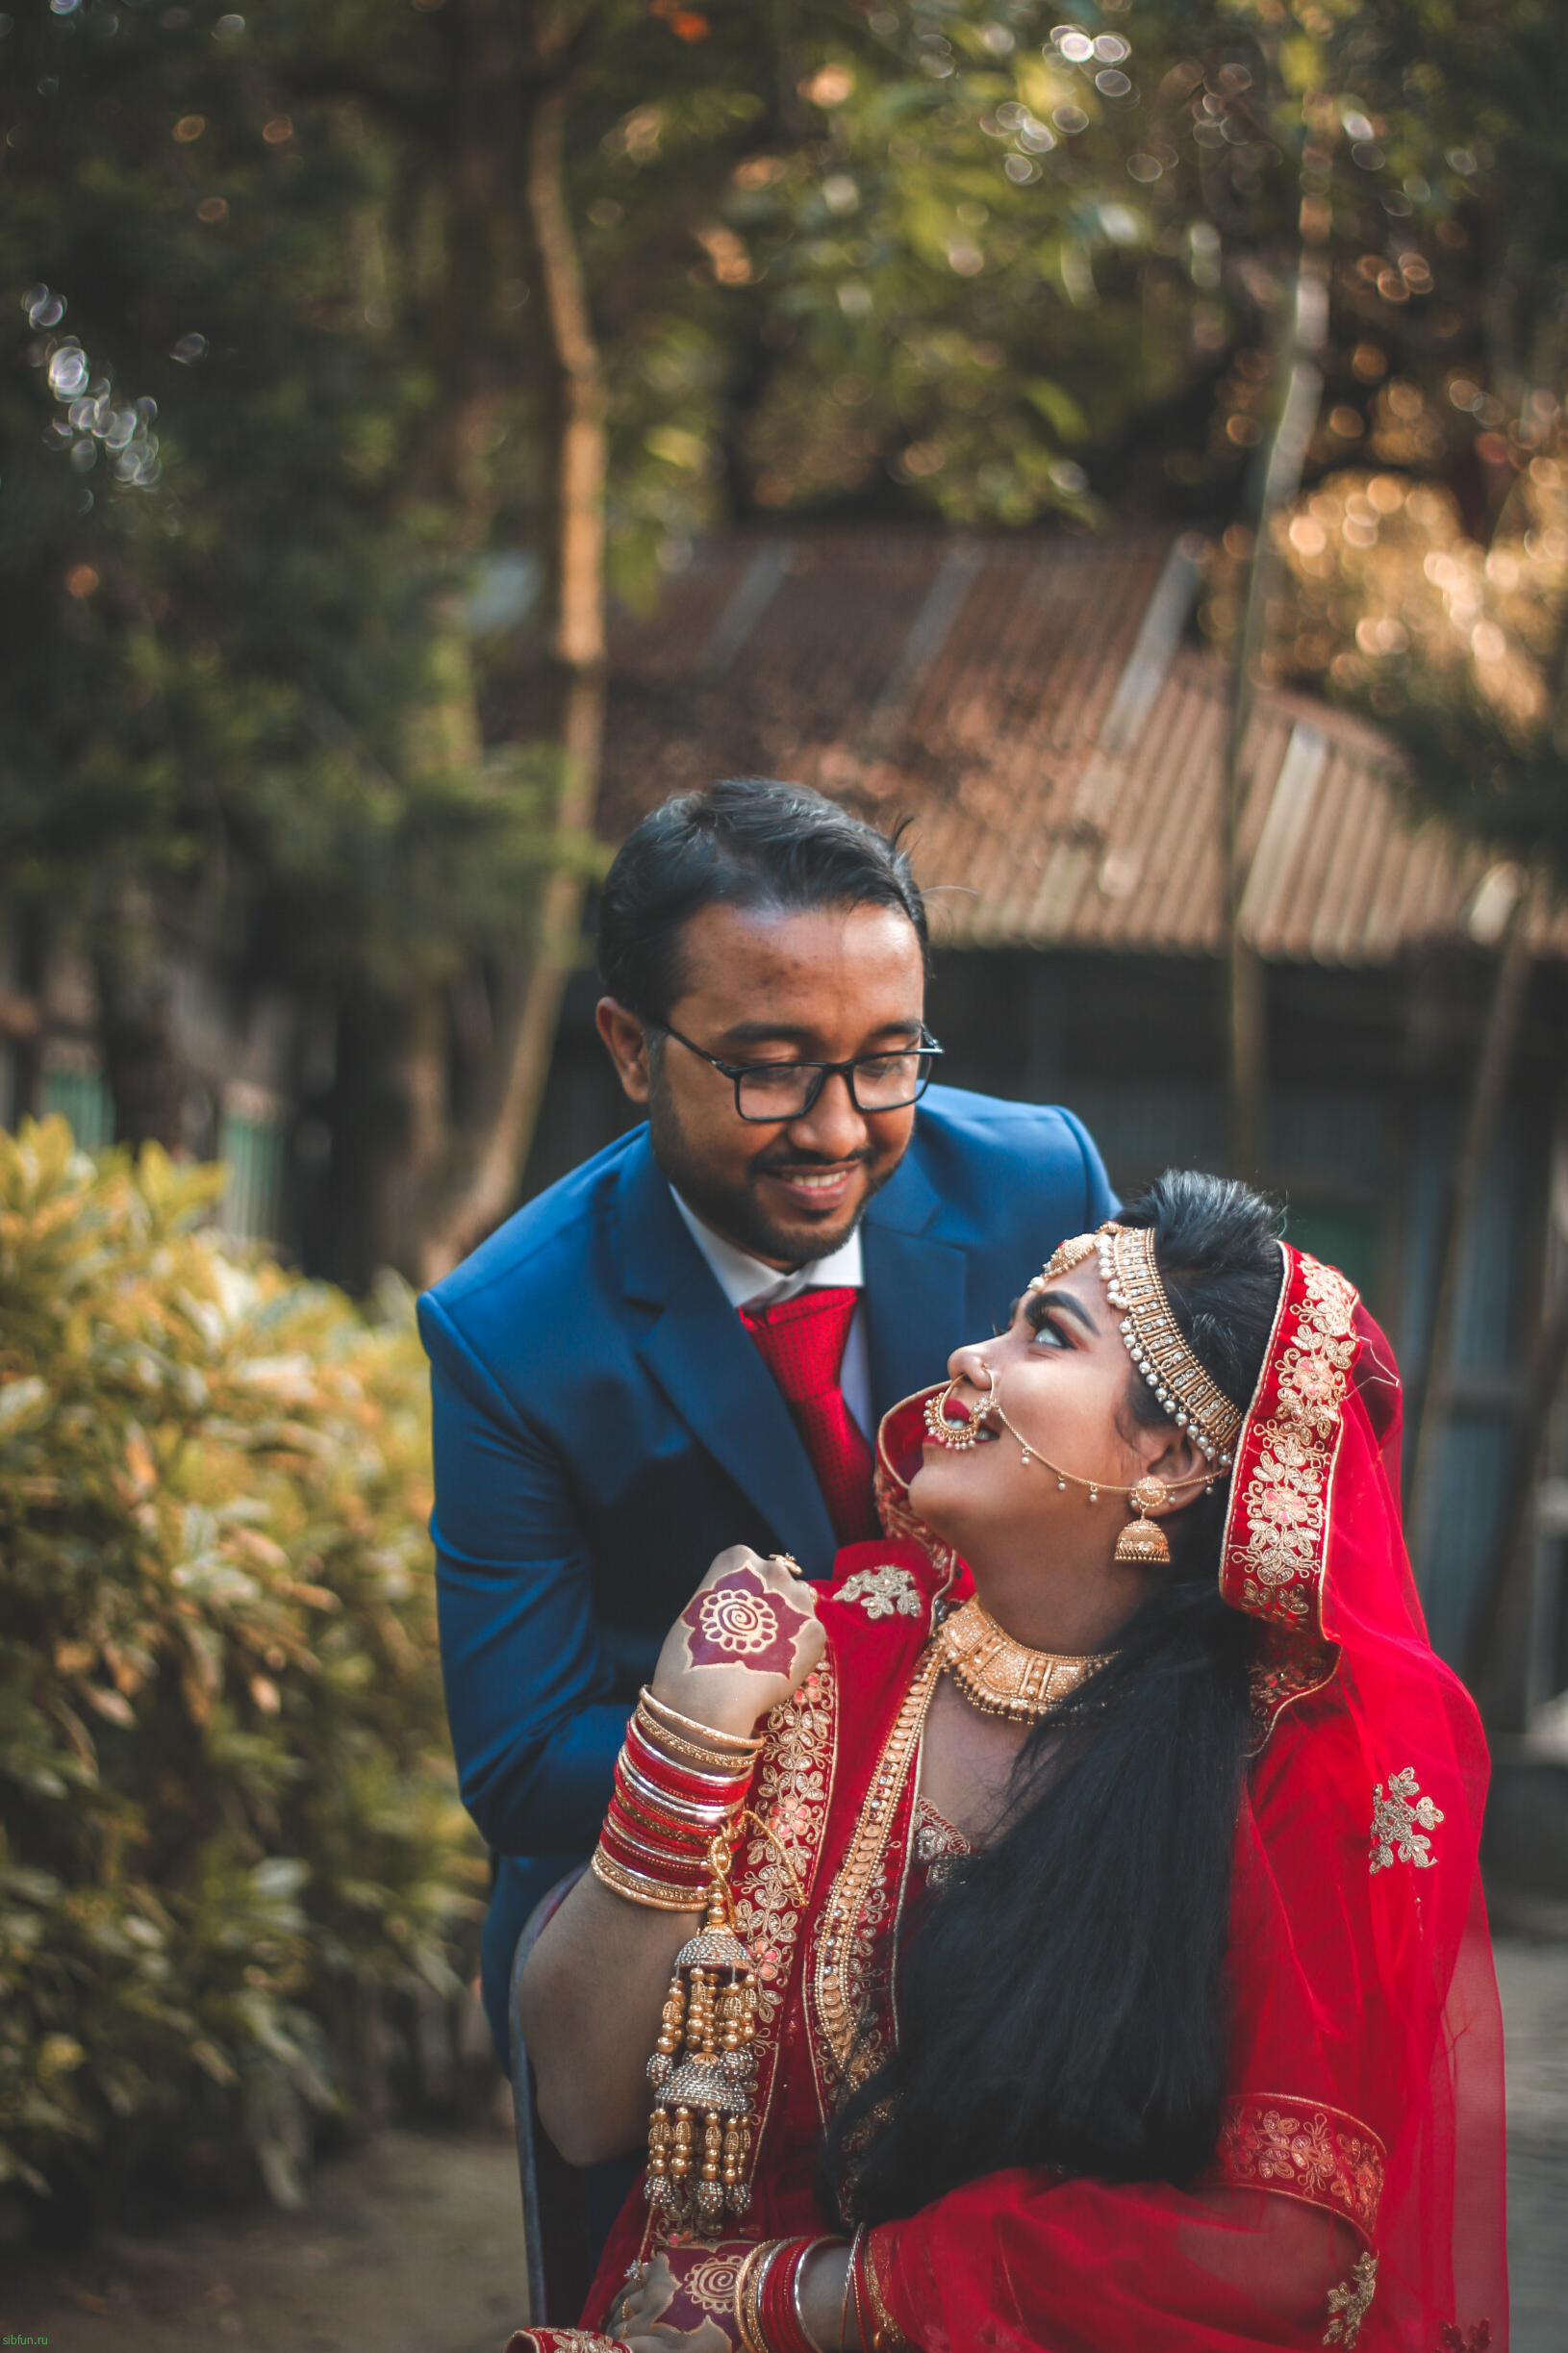 Традиционные индийские свадьбы — какие они?